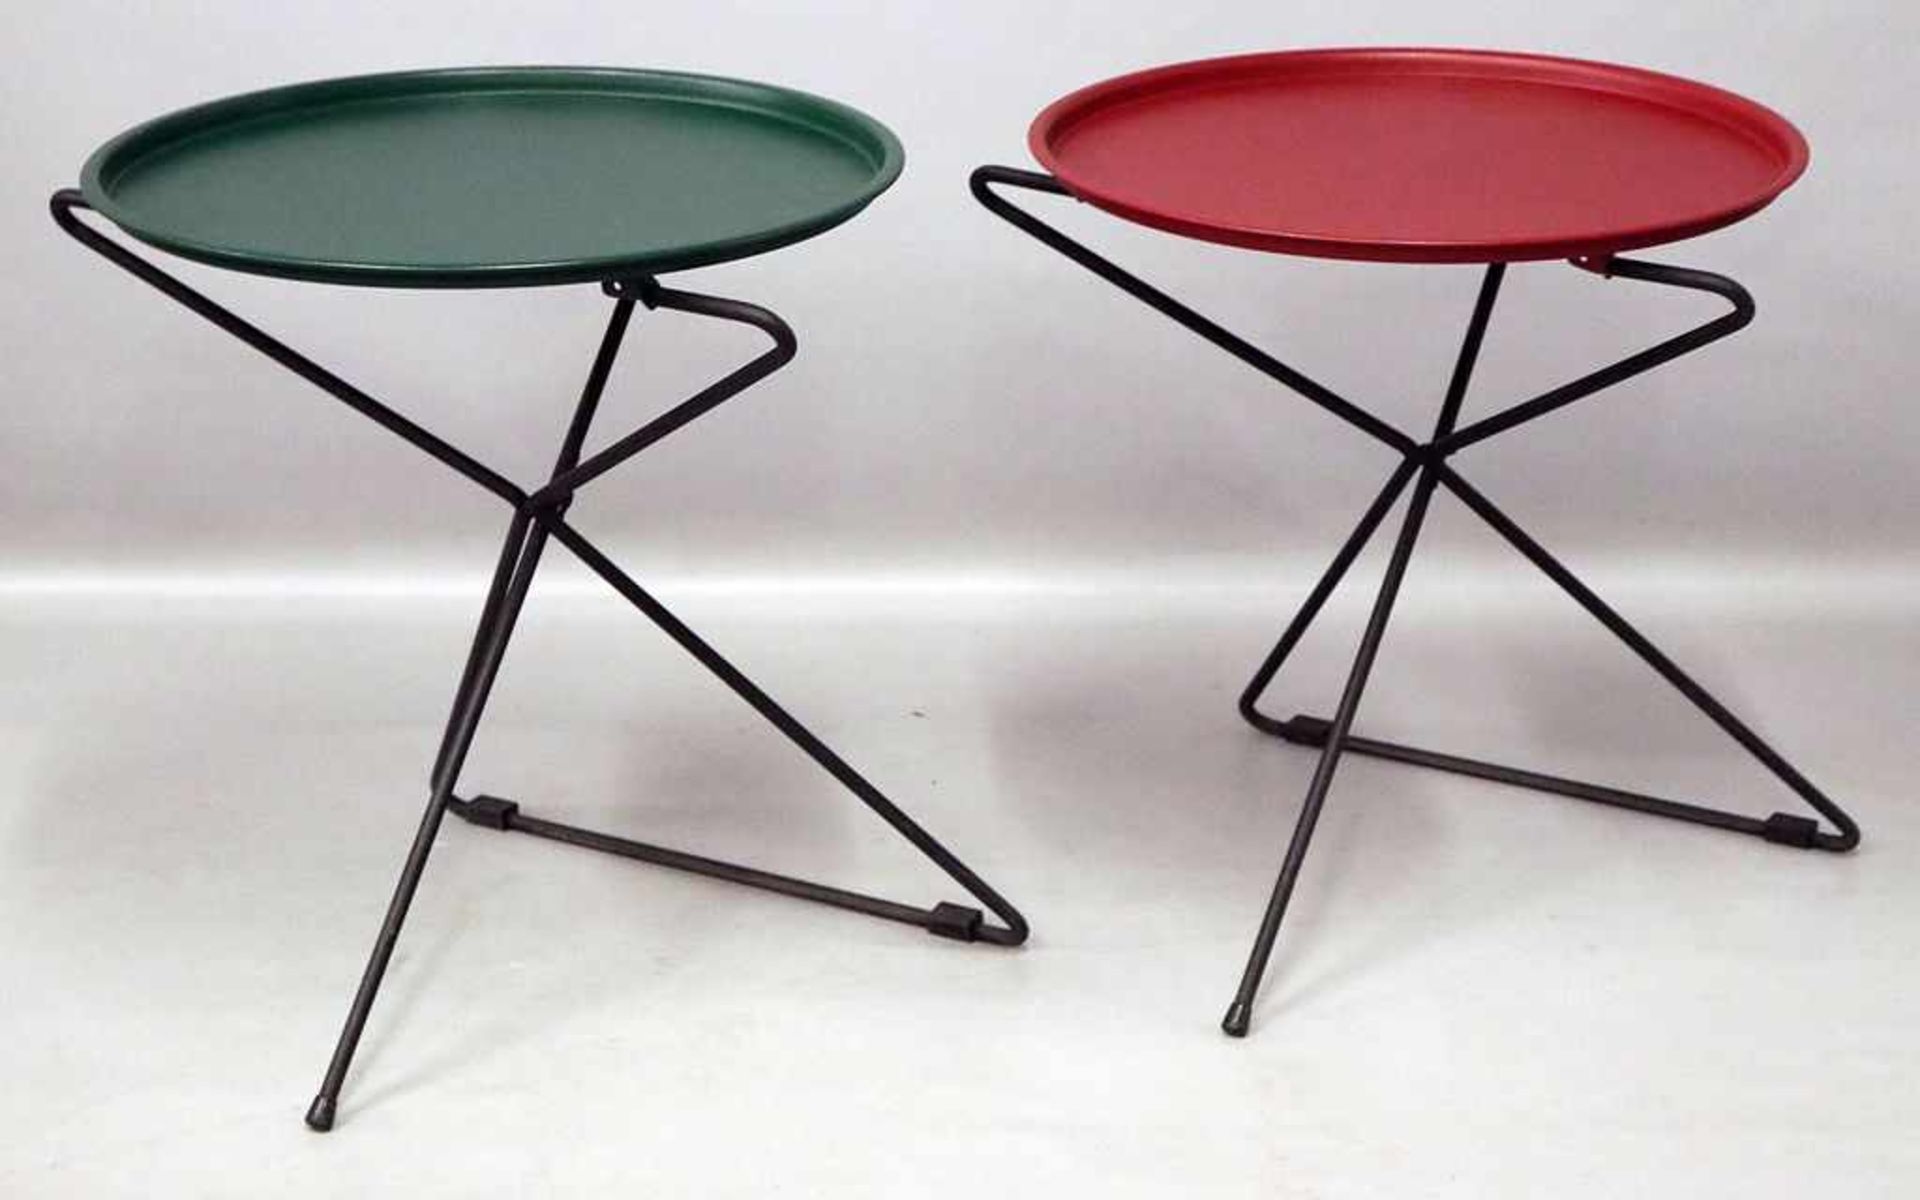 2 moderne Klapptische.Gestell aus geschwärztem Metall, runde Tischplatte, rot bzw. grün gelackt.